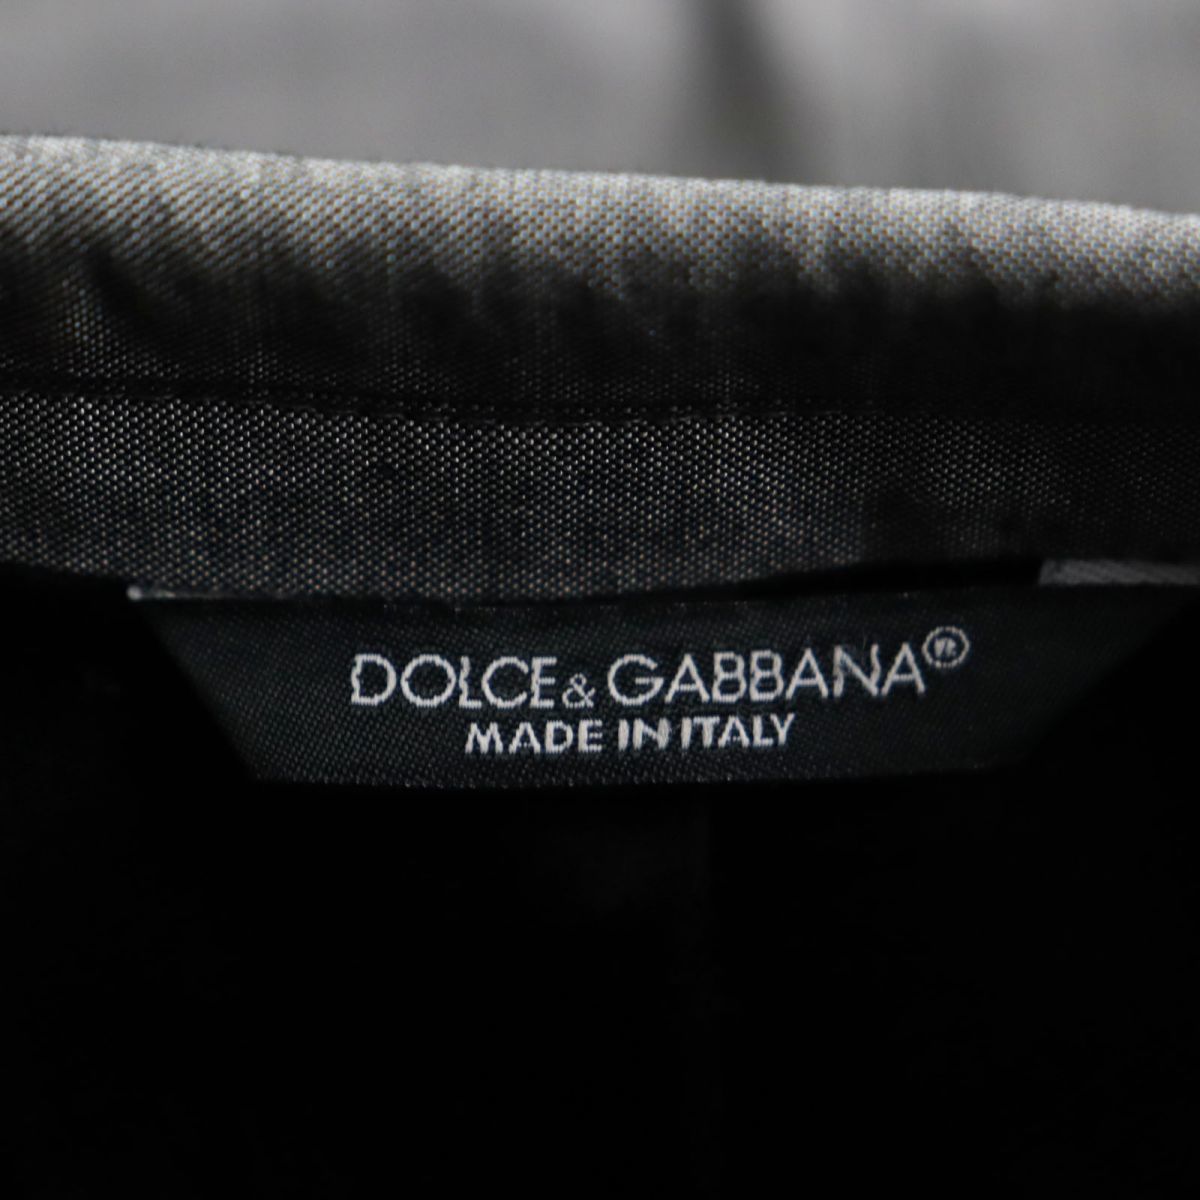  прекрасный товар * чёрный бирка DOLCE&GABBANA Dolce & Gabbana MARTINI шелк .книга@ порез перо одиночный tailored jacket серый 48 сделано в Италии стандартный товар мужской 